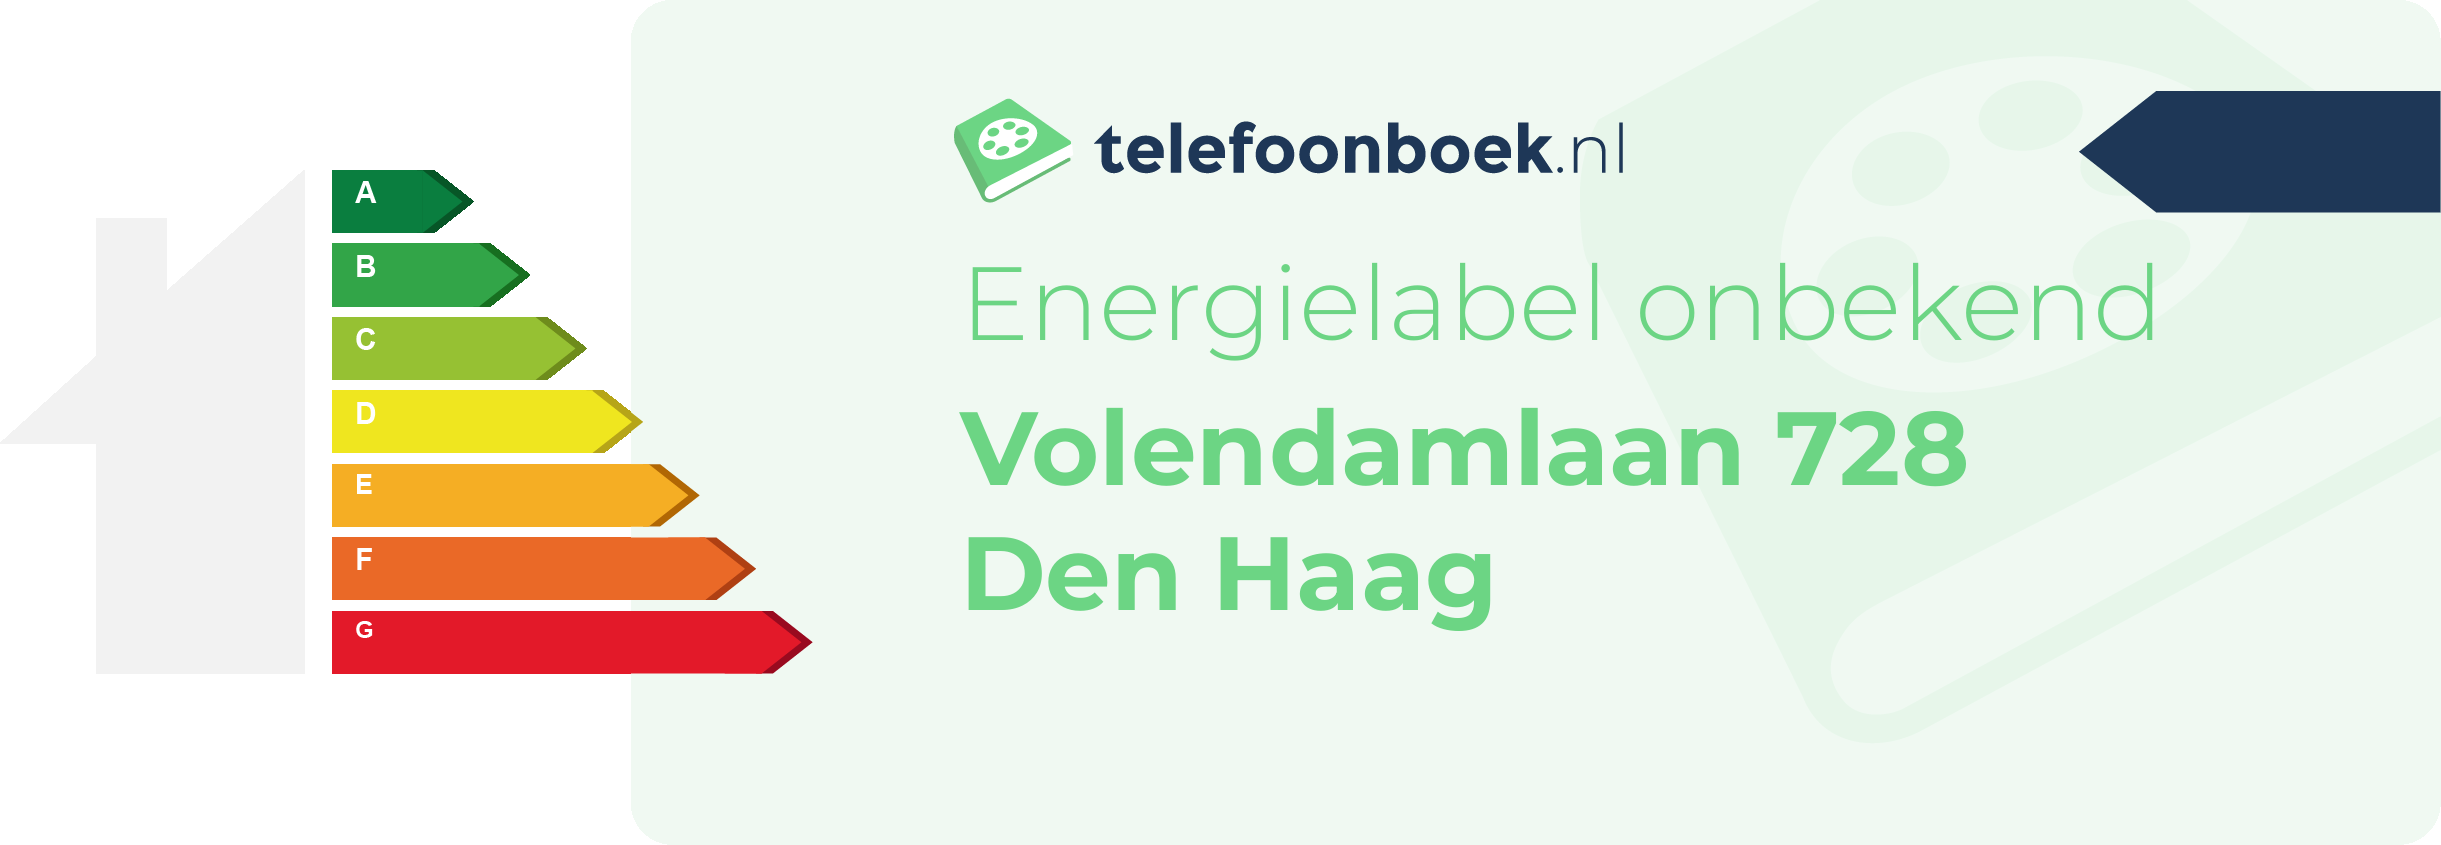 Energielabel Volendamlaan 728 Den Haag